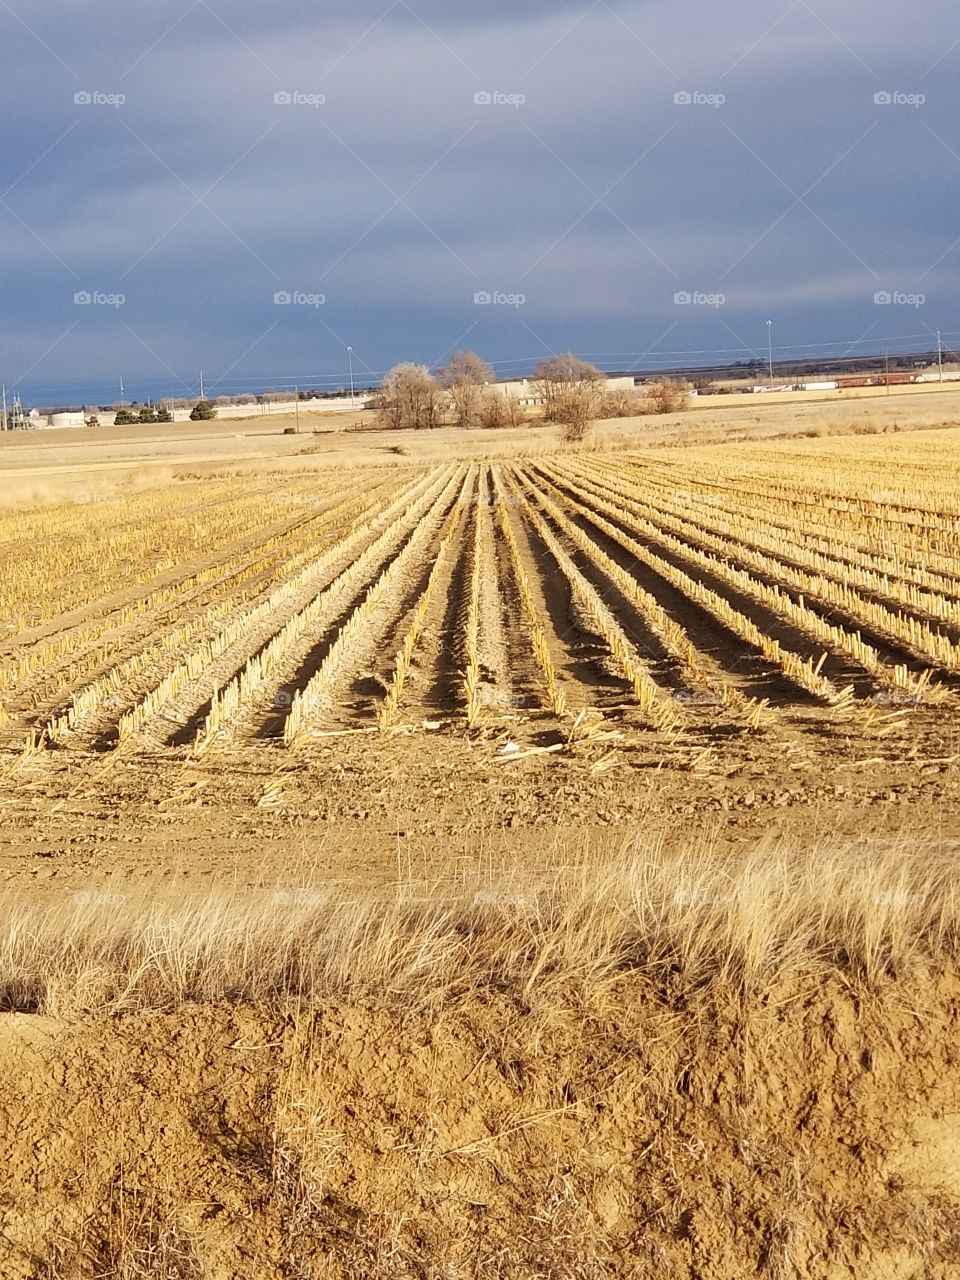 Corn field in January